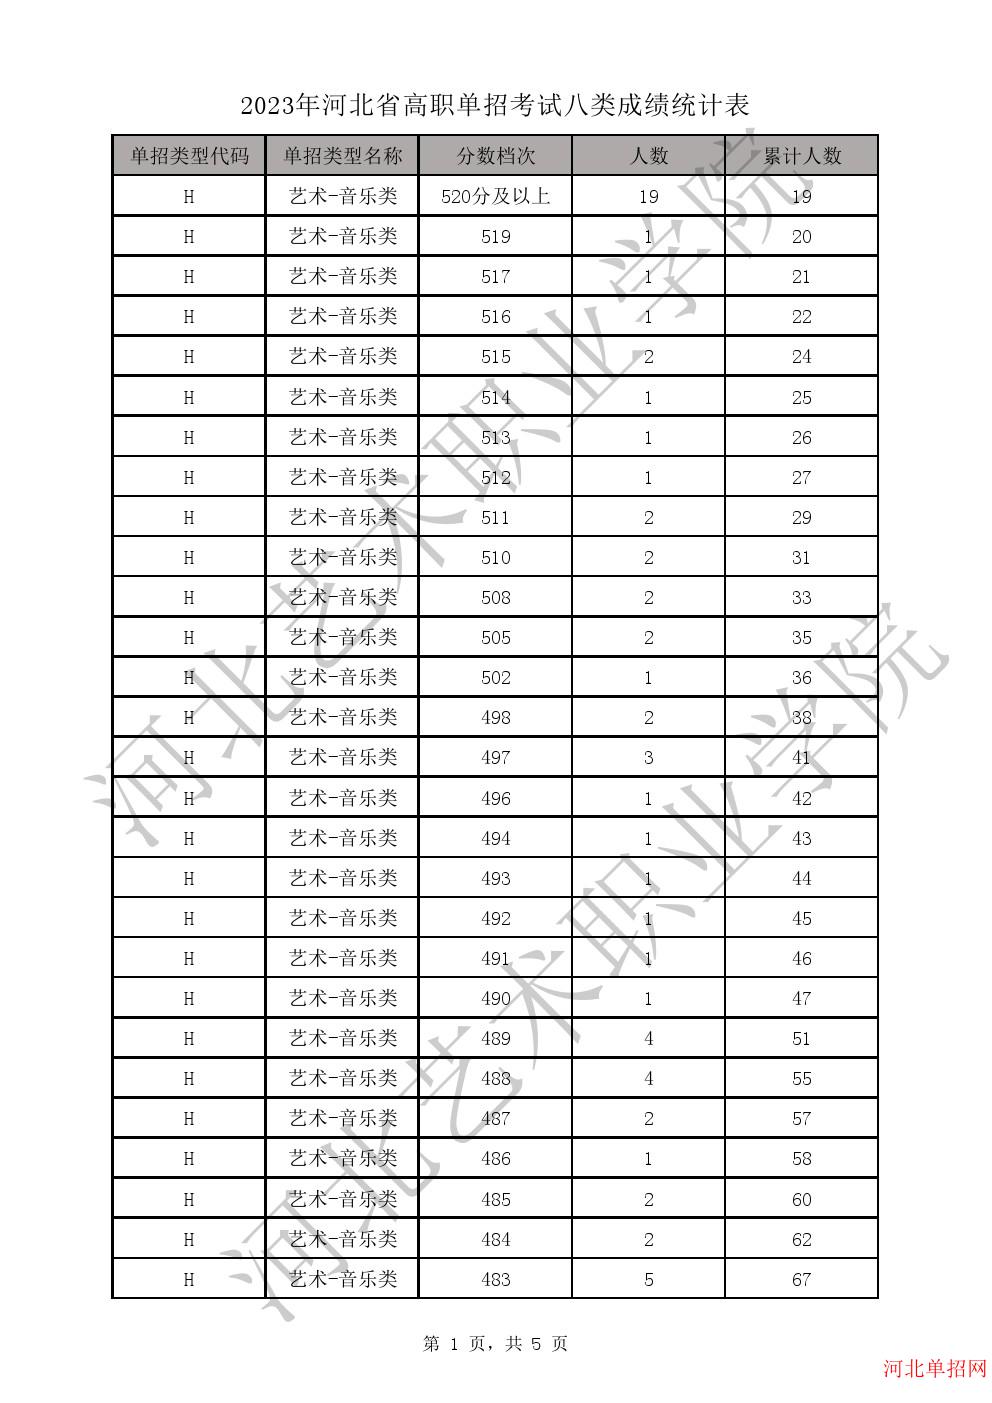 2023年河北省高职单招考试八类成绩统计表-H艺术-音乐类一分一档表 图1